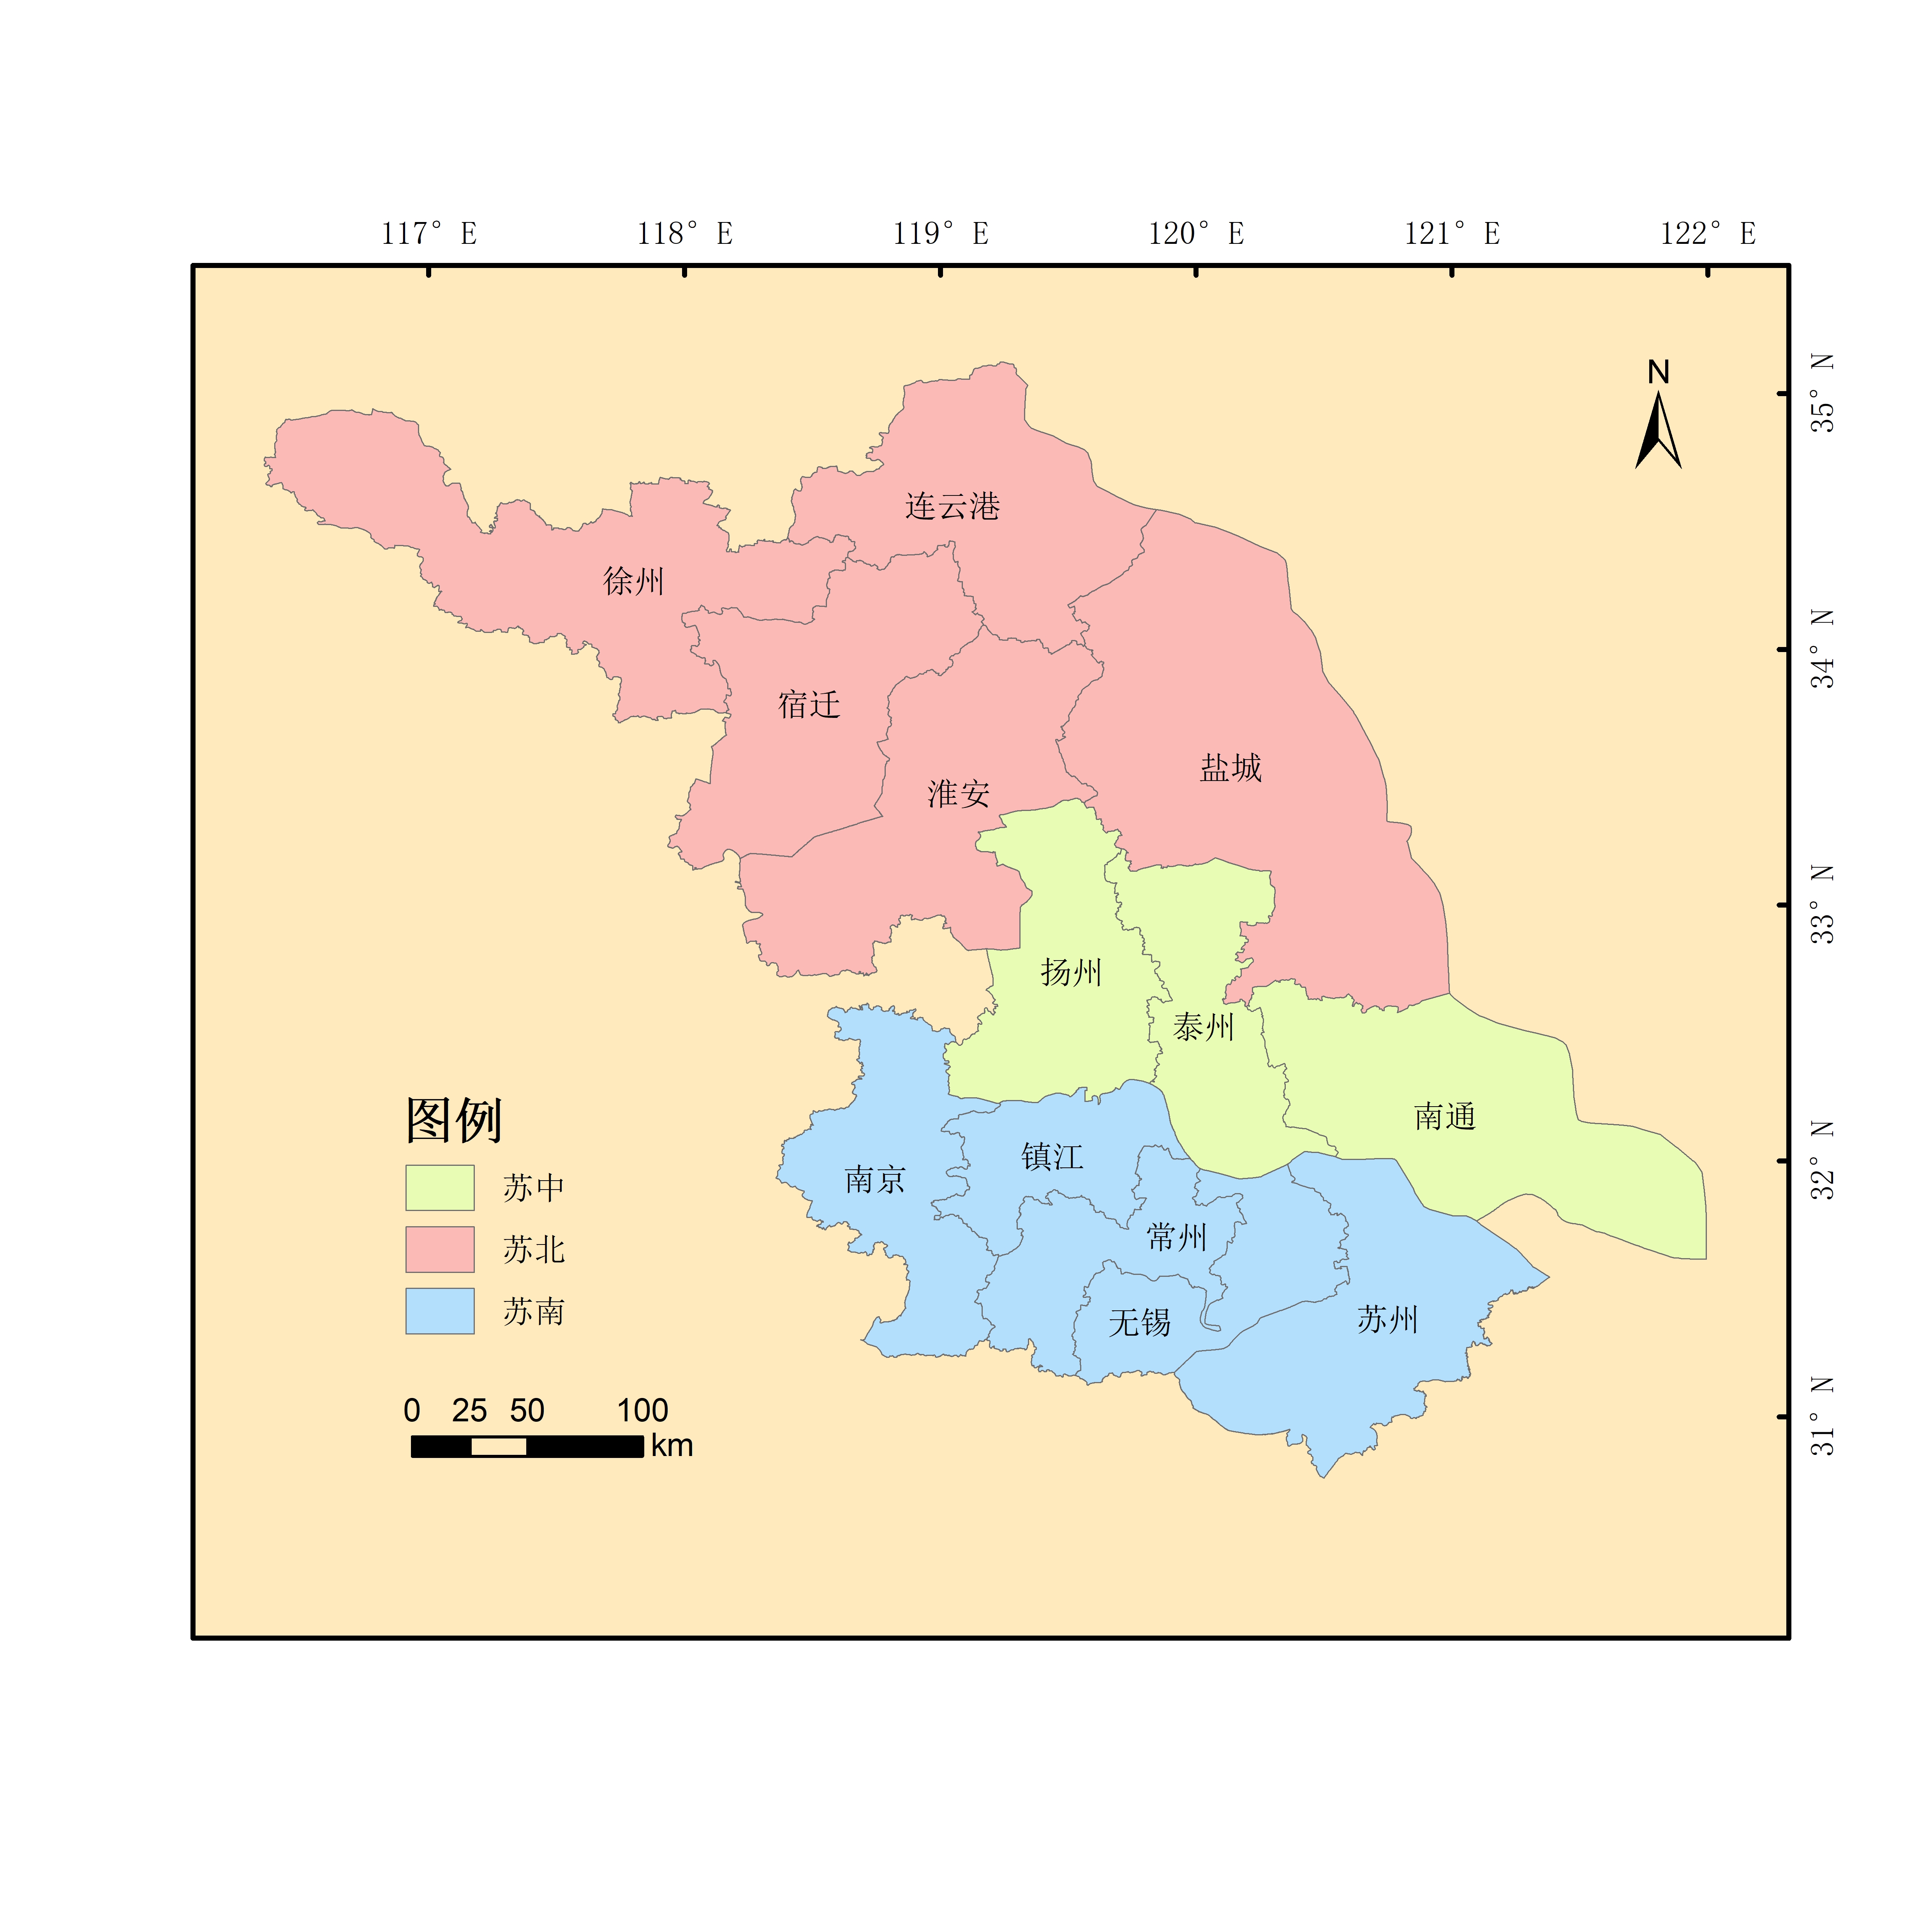 盐城在江苏省的位置